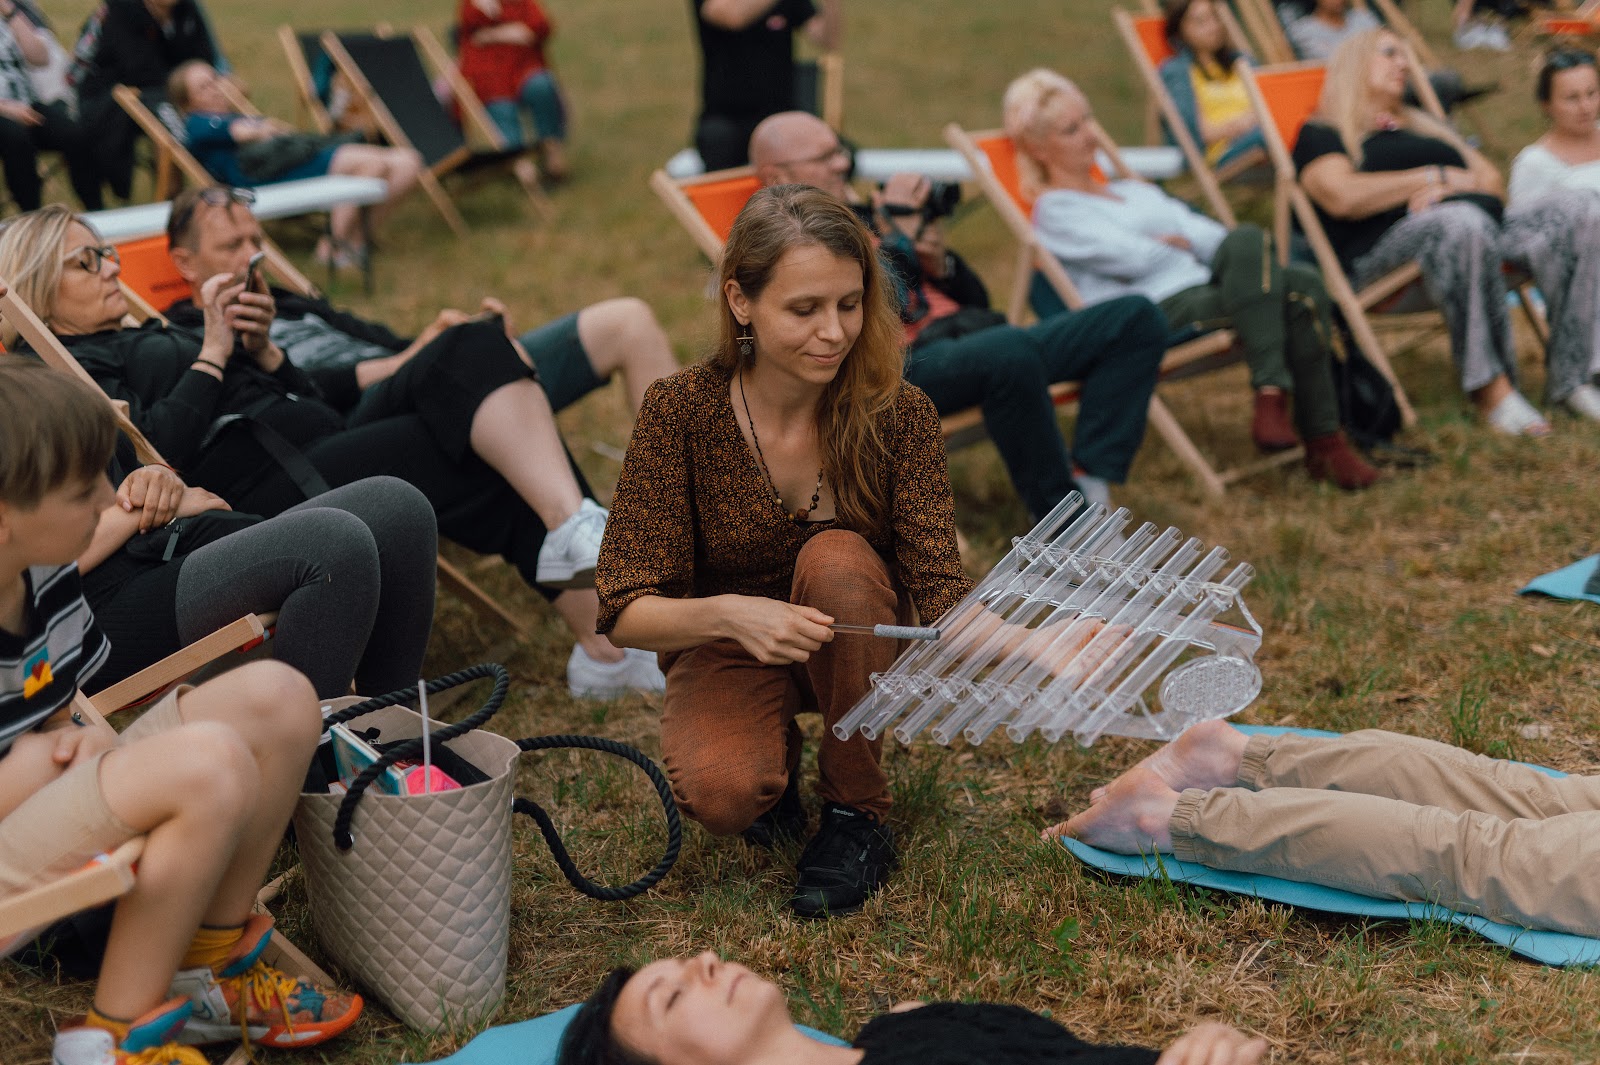 Młoda kobieta trzymająca w ręce szklany instrument przypominający cymbałki kuca pośród ludzi siedzących na leżakach oraz leżących na matach na trawie. Trwa koncert relaksacyjny.